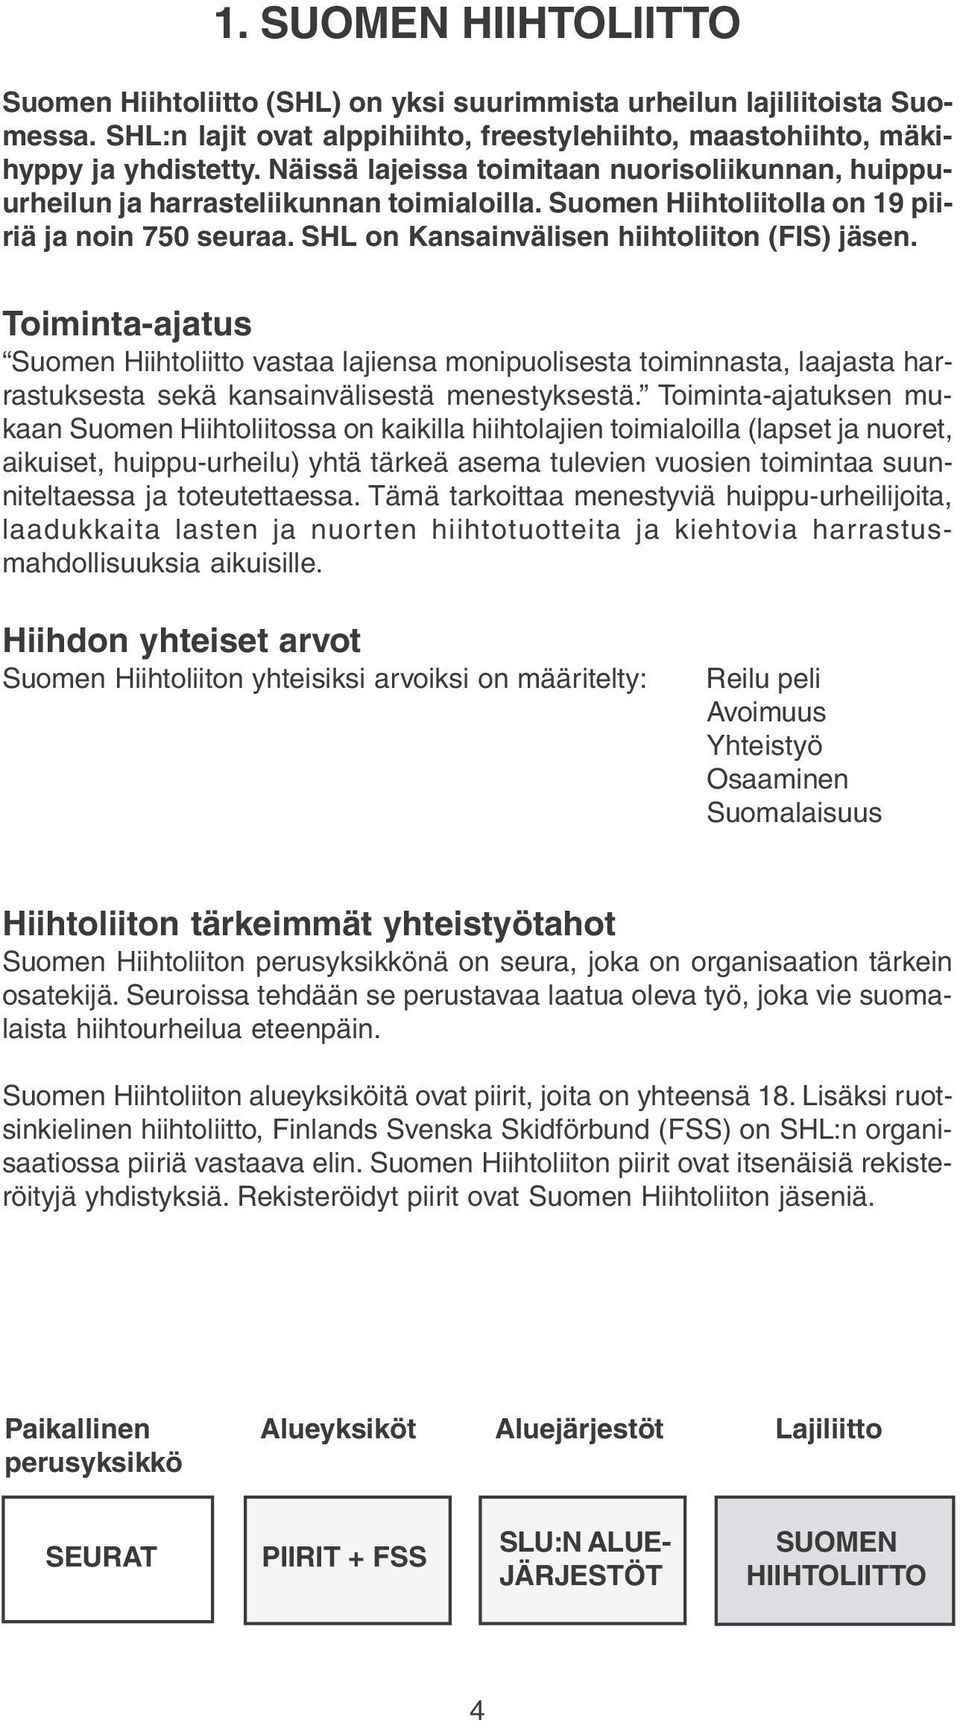 Timinta-ajatus Sumen Hiihtliitt vastaa lajiensa mnipulisesta timinnasta, laajasta harrastuksesta sekä kansainvälisestä menestyksestä.